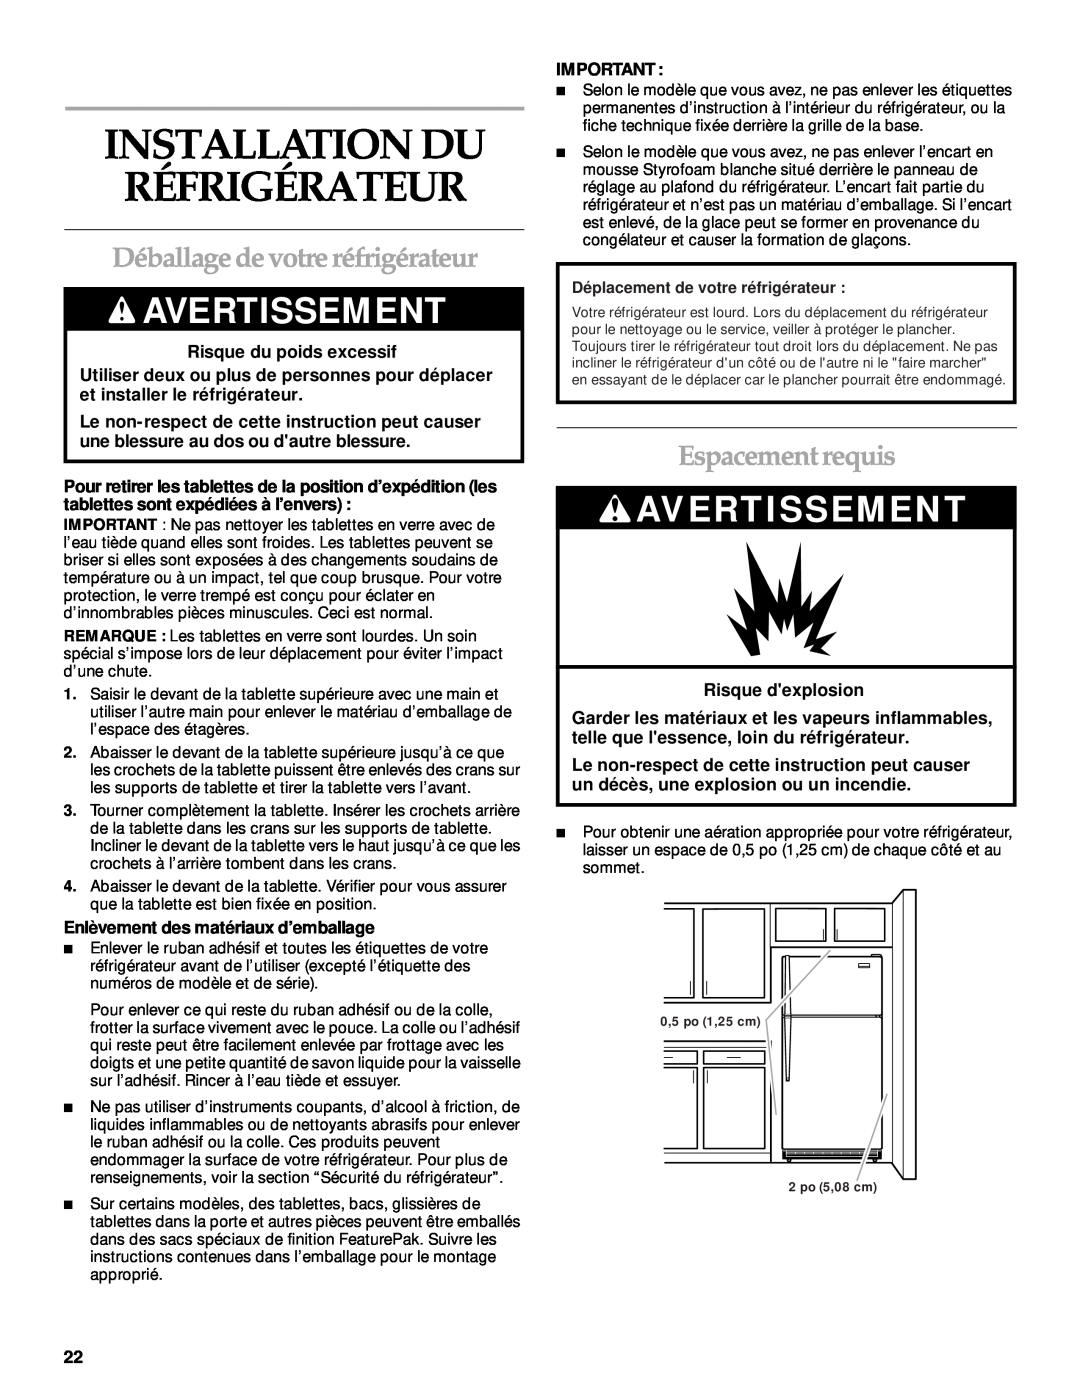 KitchenAid 2205264 manual Installation Du Réfrigérateur, Déballage de votre réfrigérateur, Espacement requis, Avertissement 